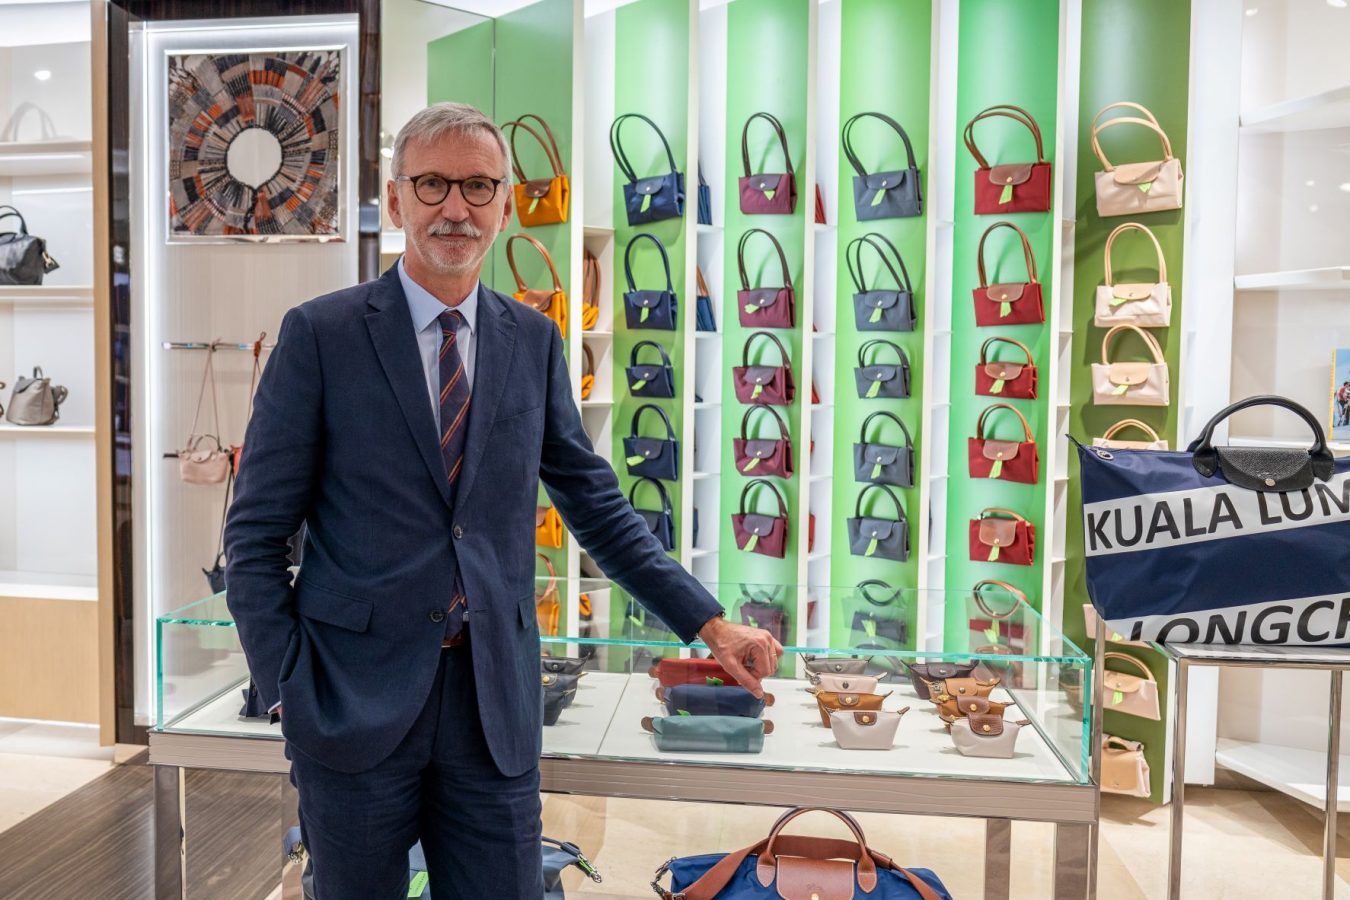 Longchamp’s CEO shares journey on zero waste & sustainable fashion